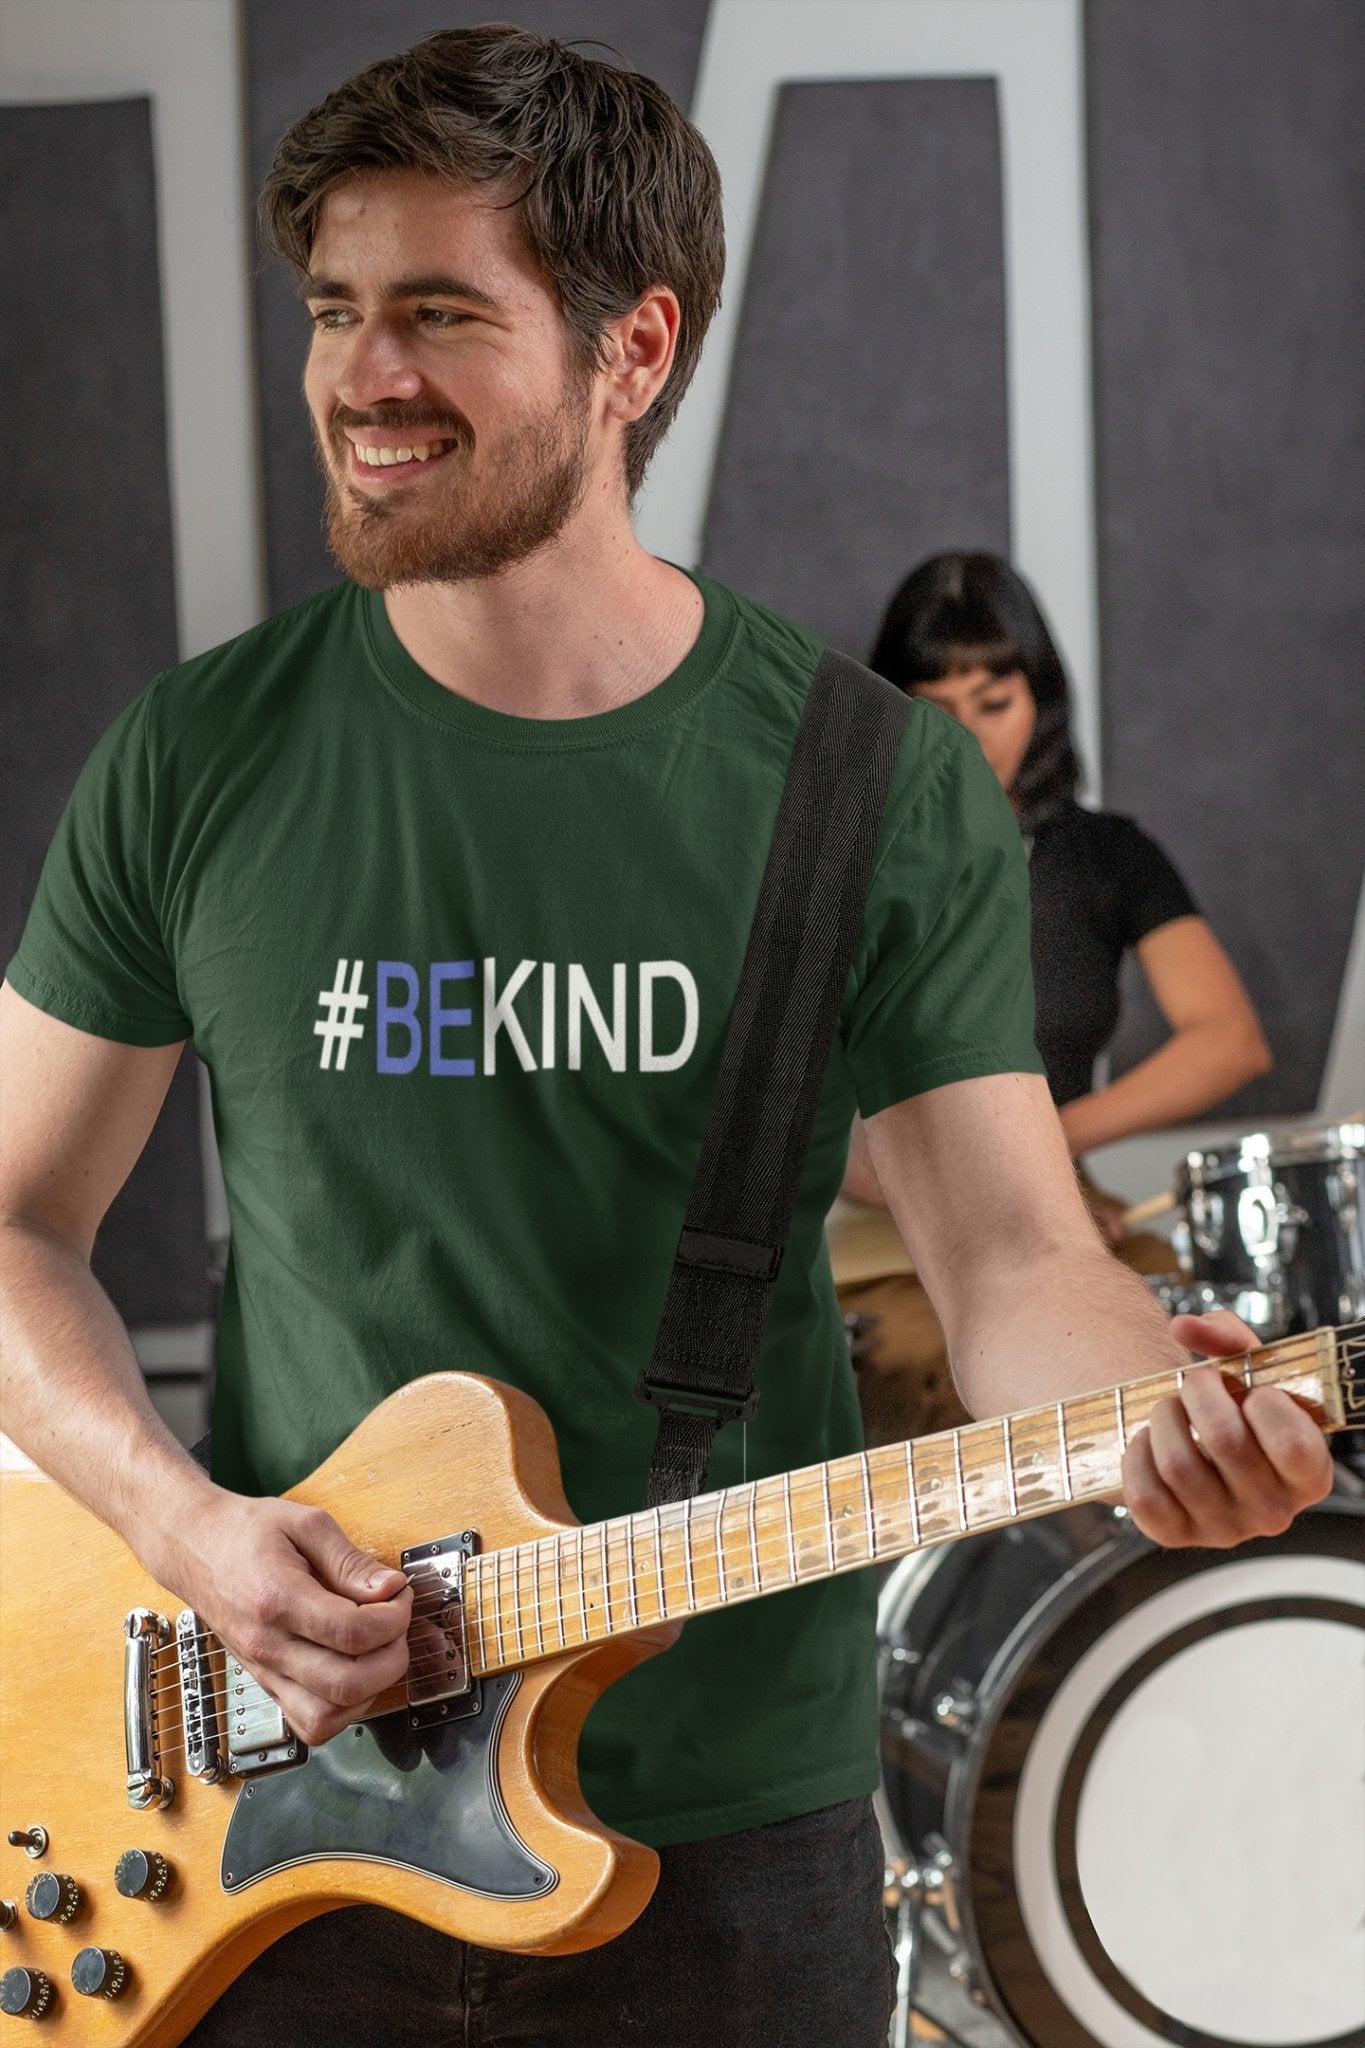 Be Kind Mens Half Sleeves T-shirt- FunkyTeesClub - Funky Tees Club